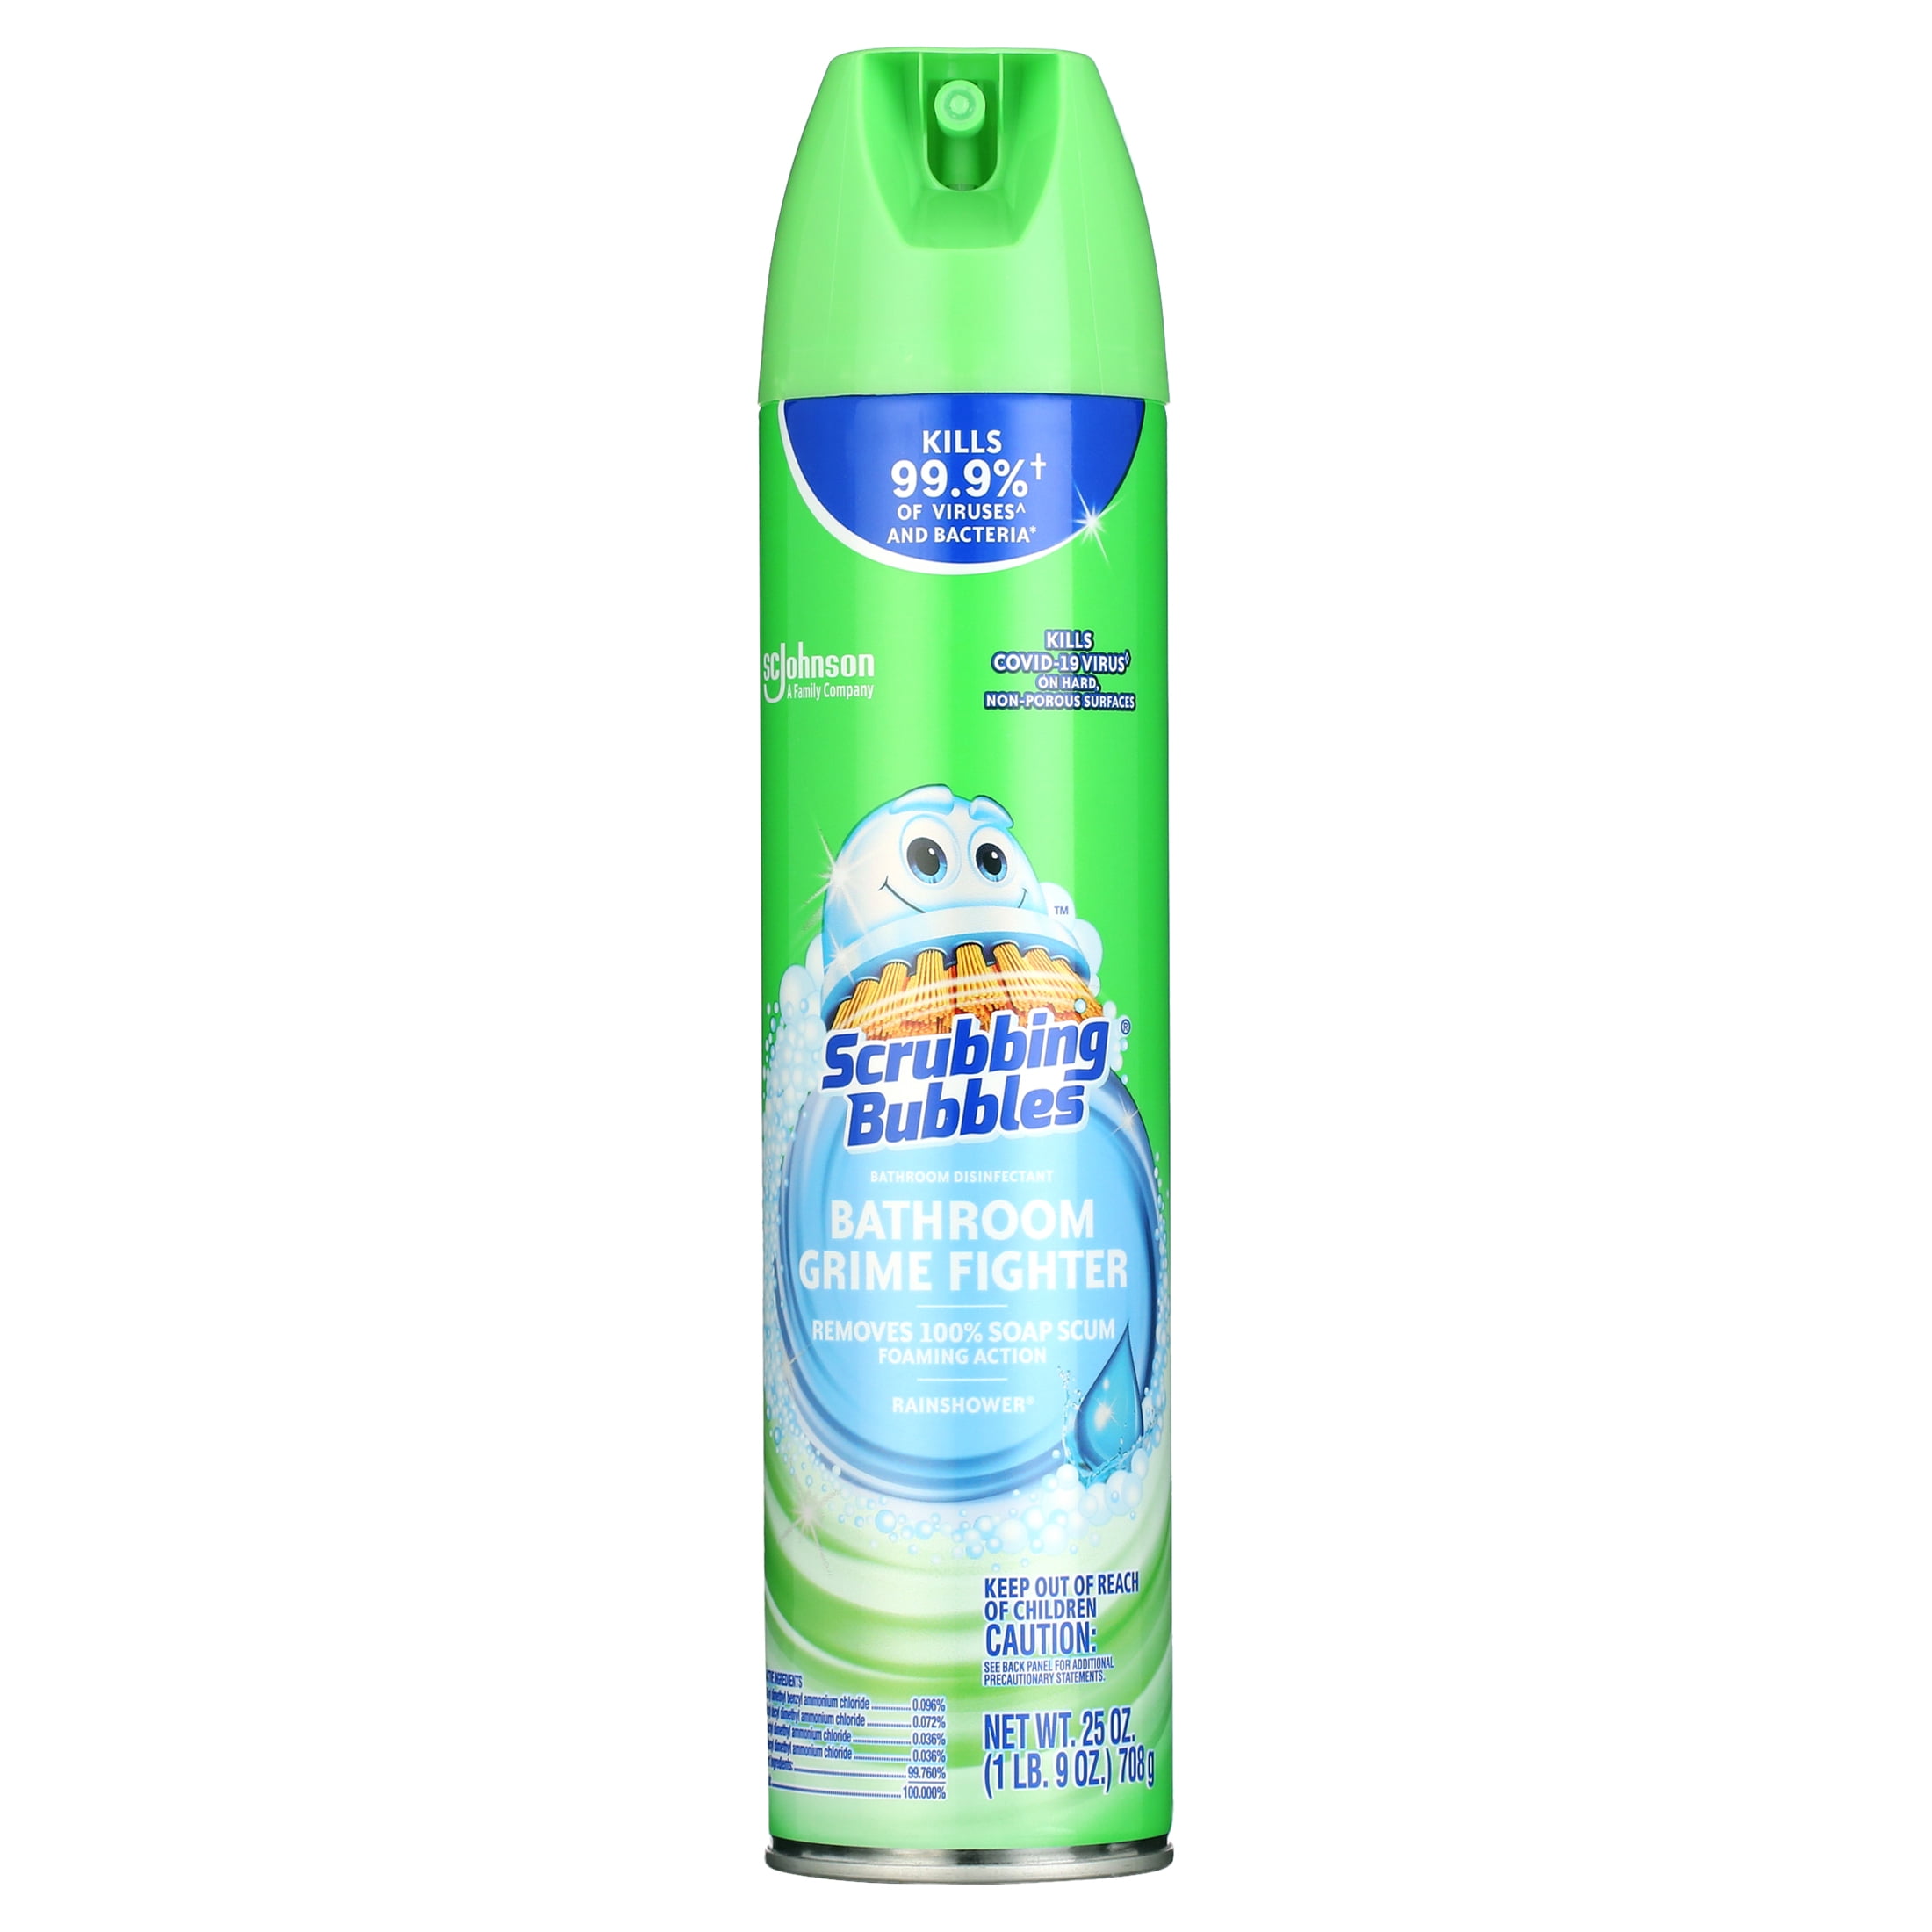 Eliminate® Shower, Tub & Tile Cleaner, 25 oz 